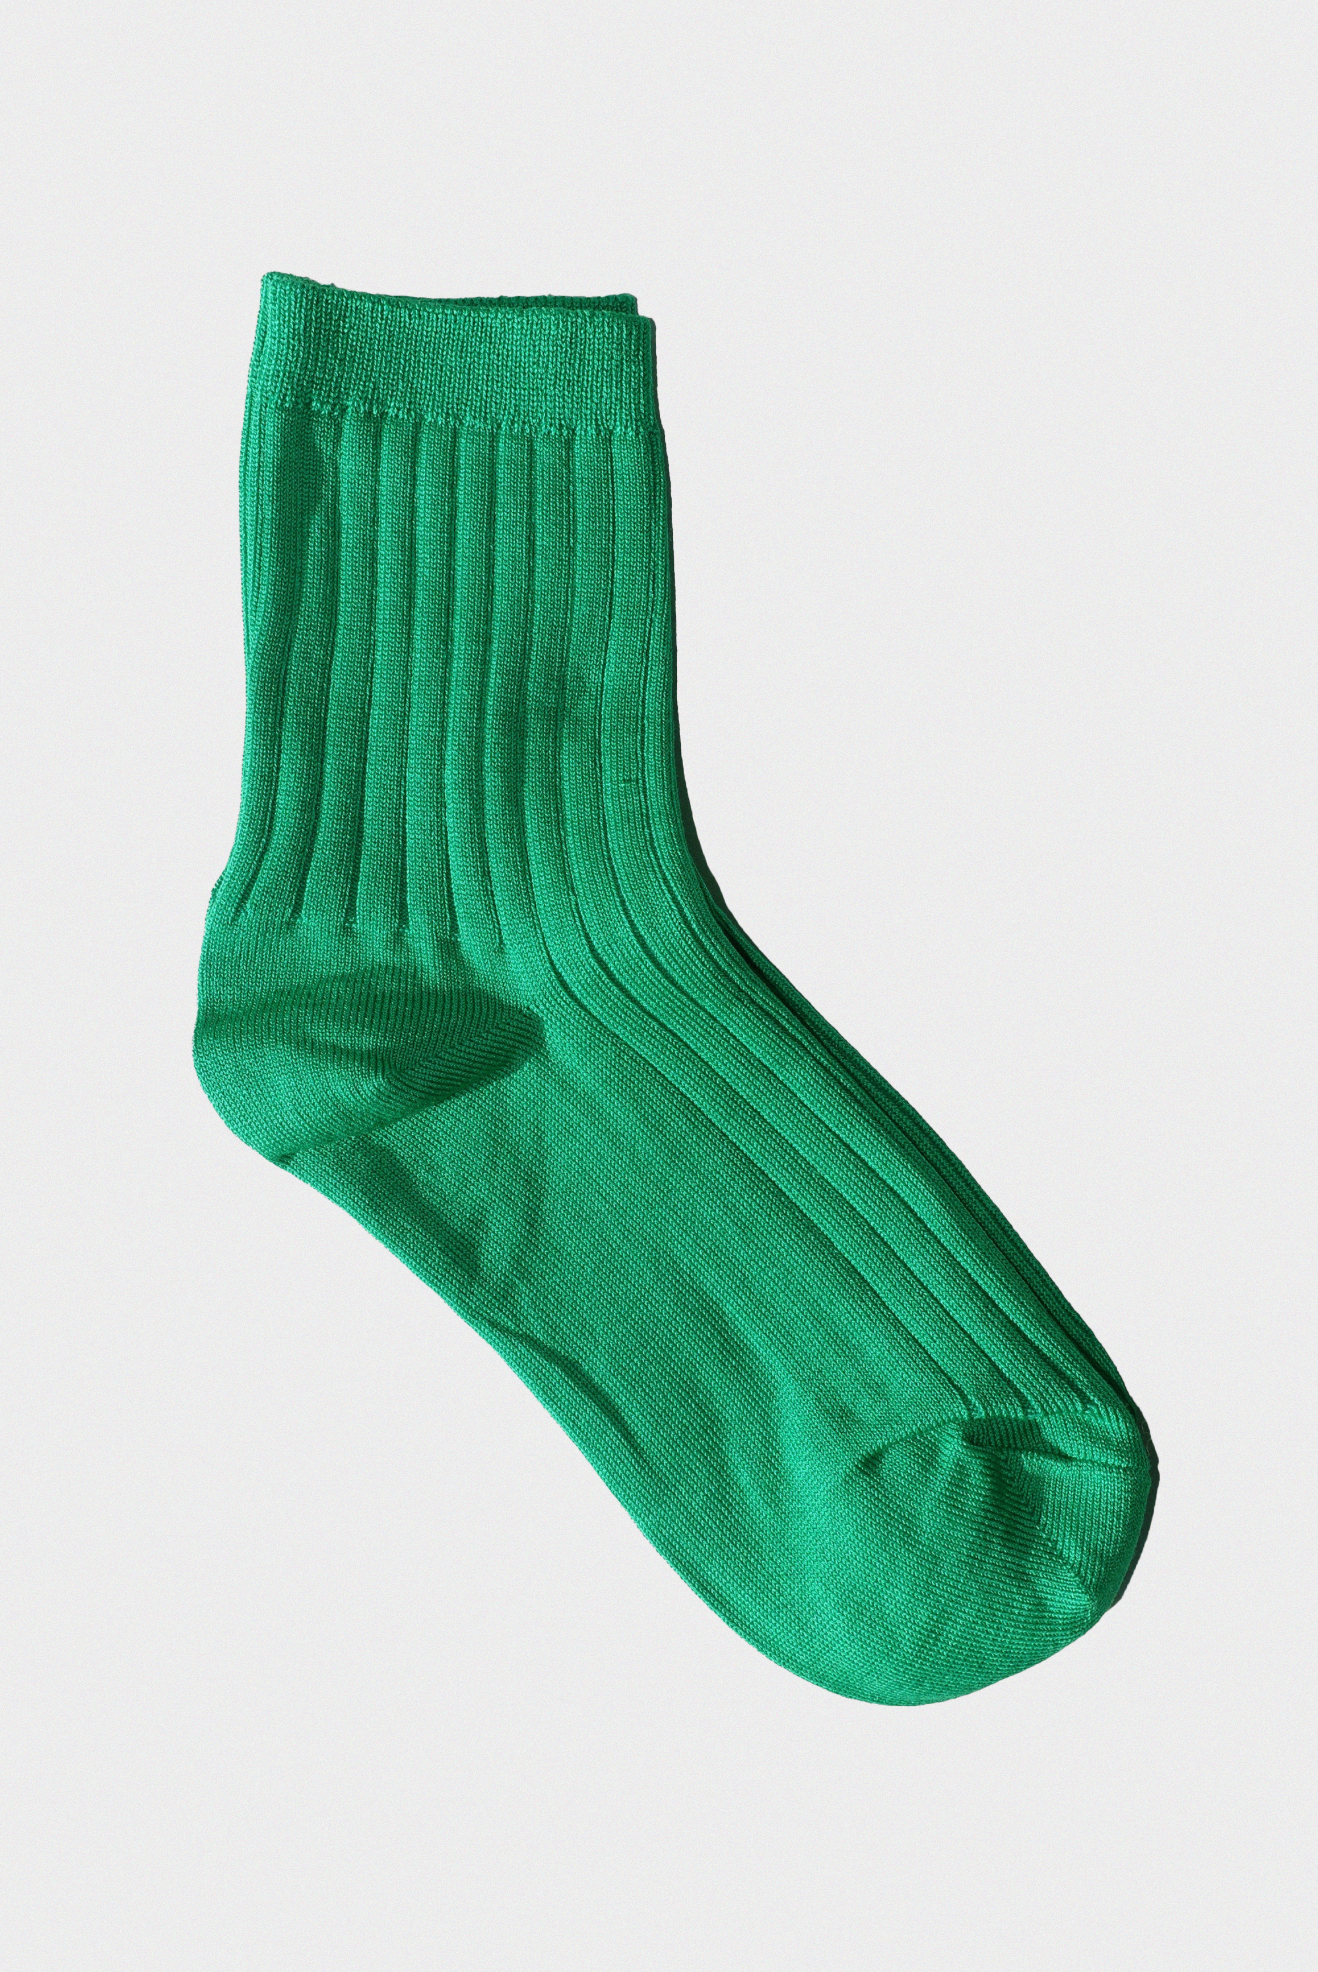 Her Socks in Kelly Green by Le Bon Shoppe